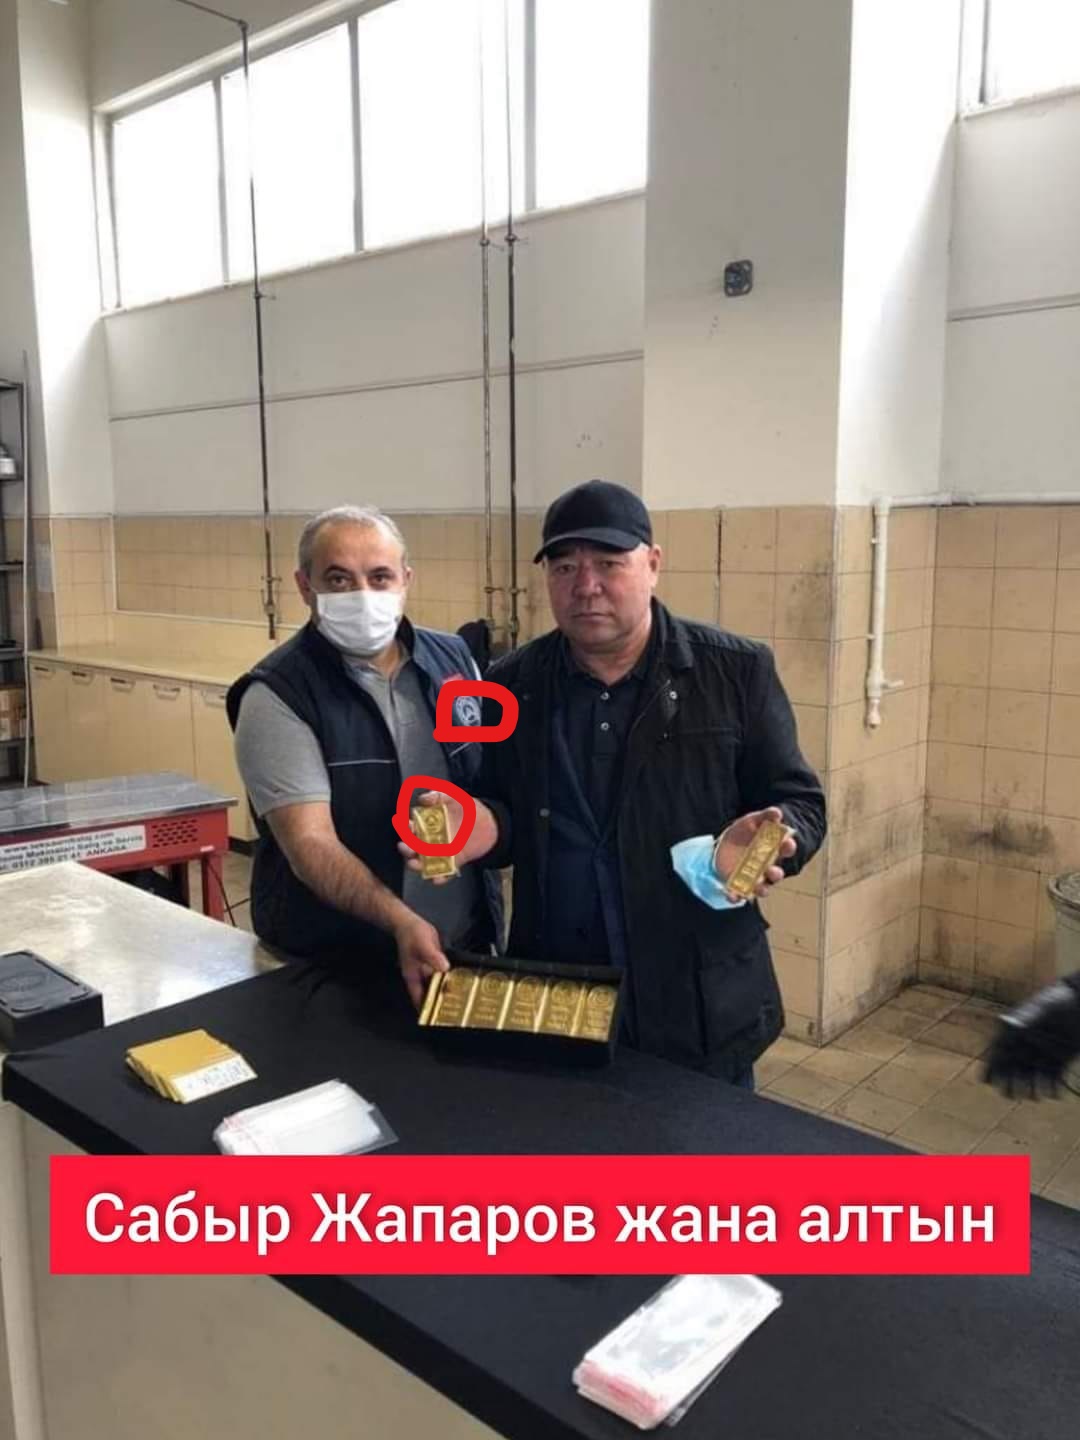 Фактчекинг: Сабыр Жапаровдун алтын кармап турган сүрөтүн текшеребиз